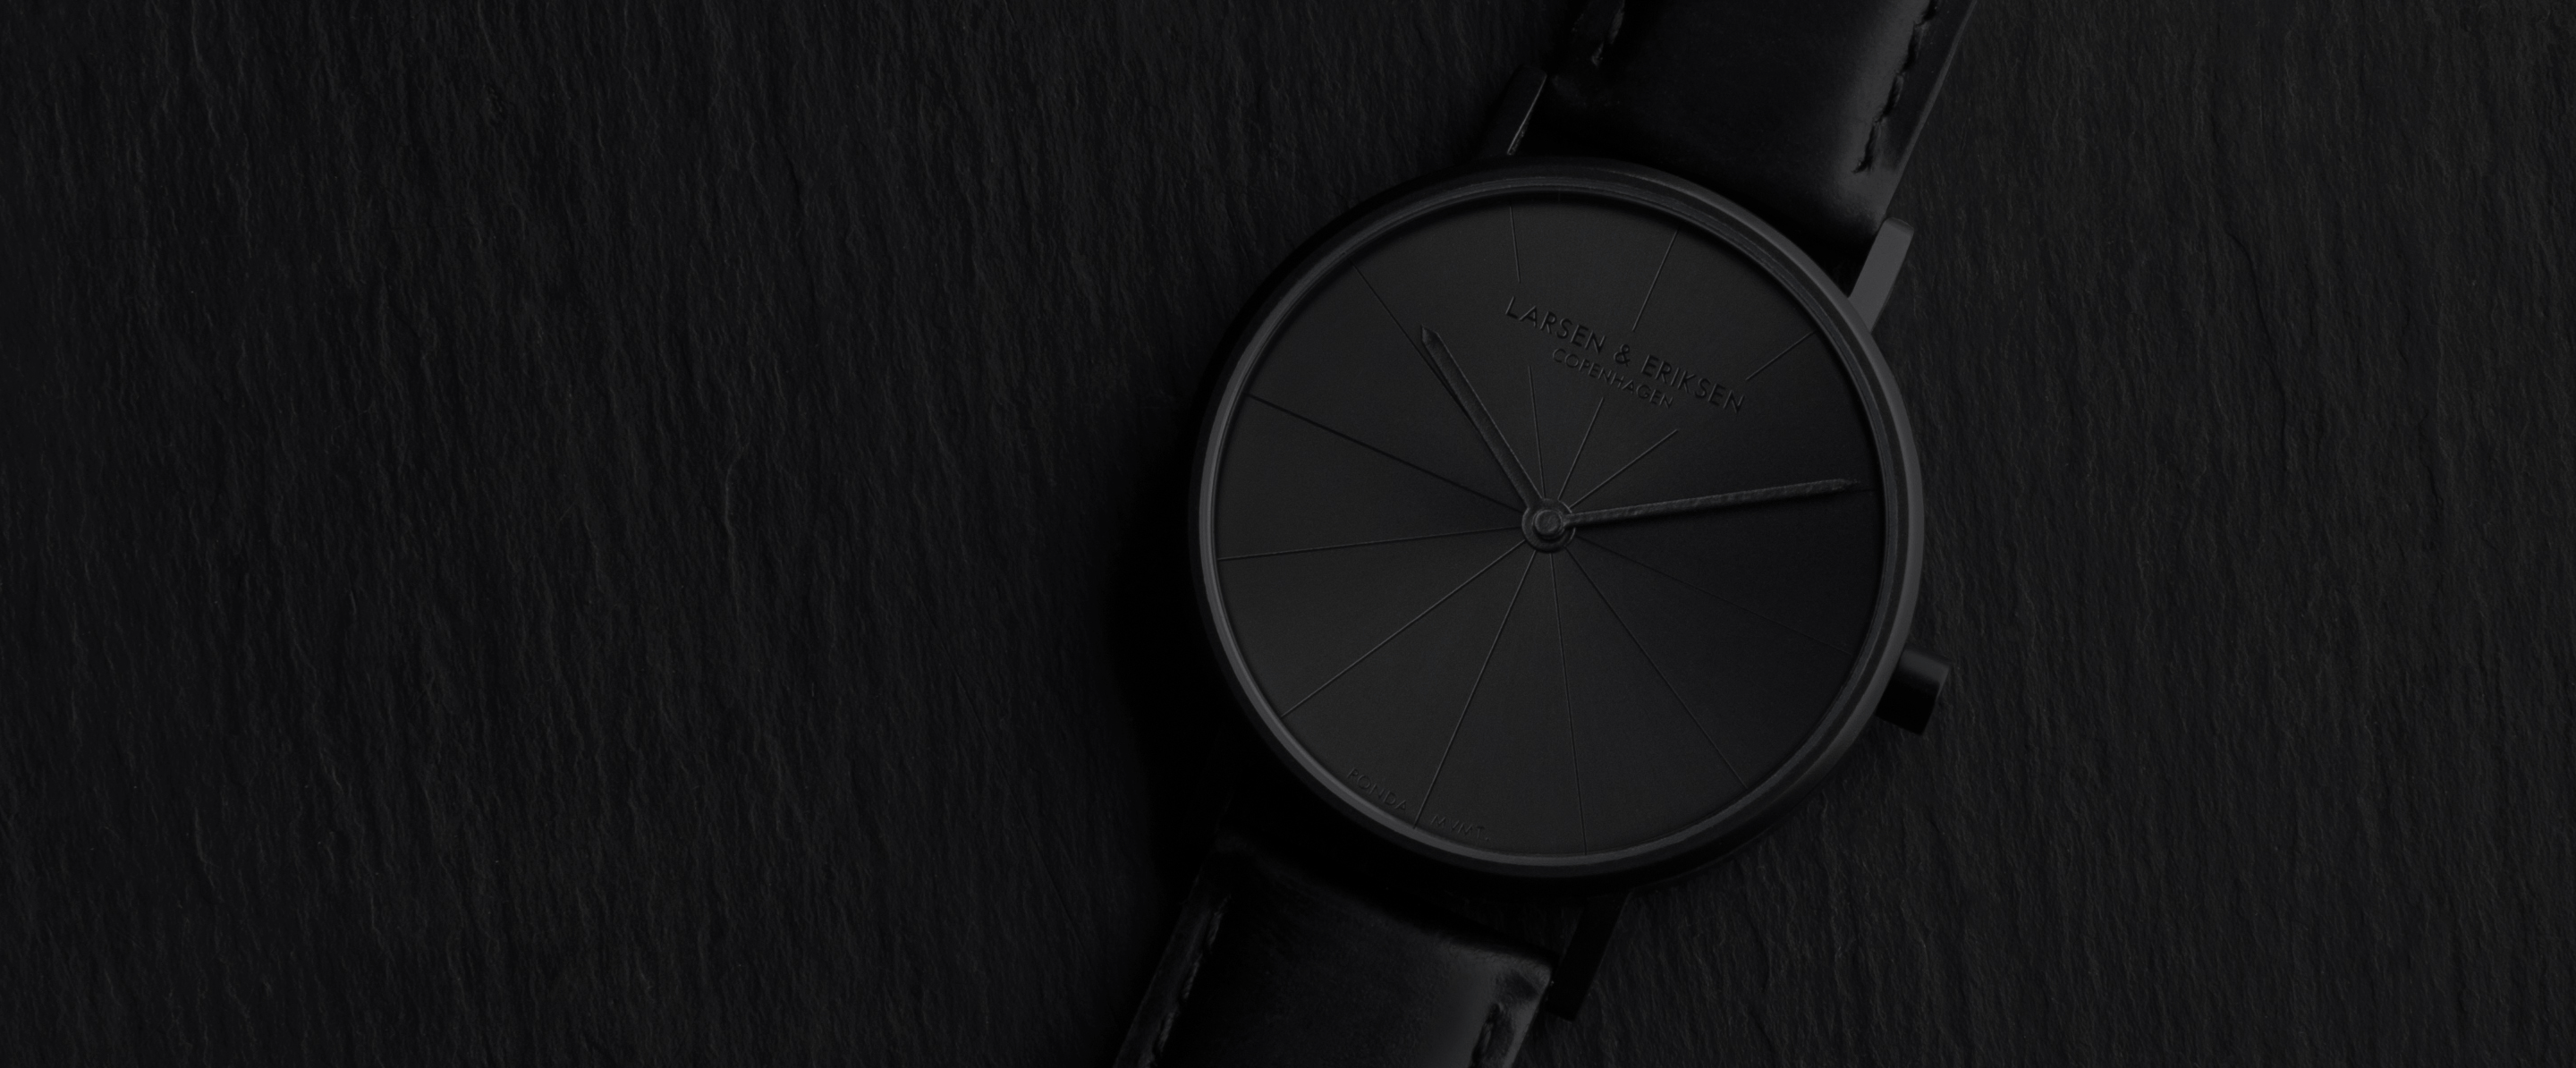 LARSEN & ERIKSEN all-black watch